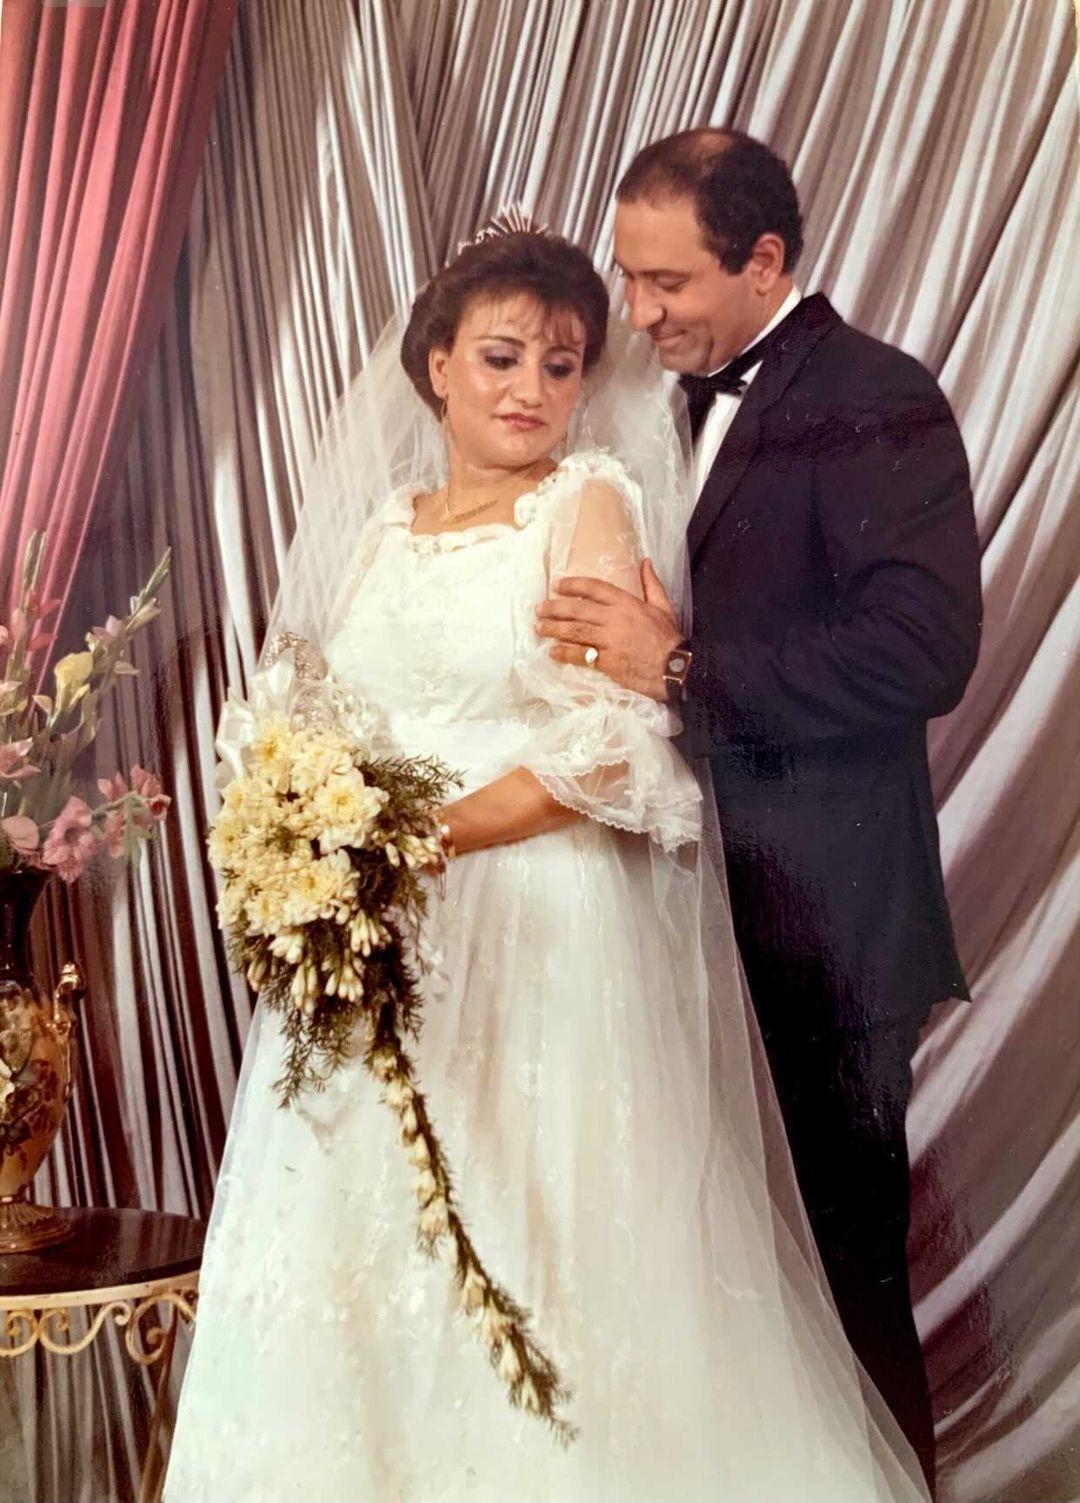 Elizabeth's parents on their wedding day, 35 years ago. (Courtesy of Elizabeth Basoski)